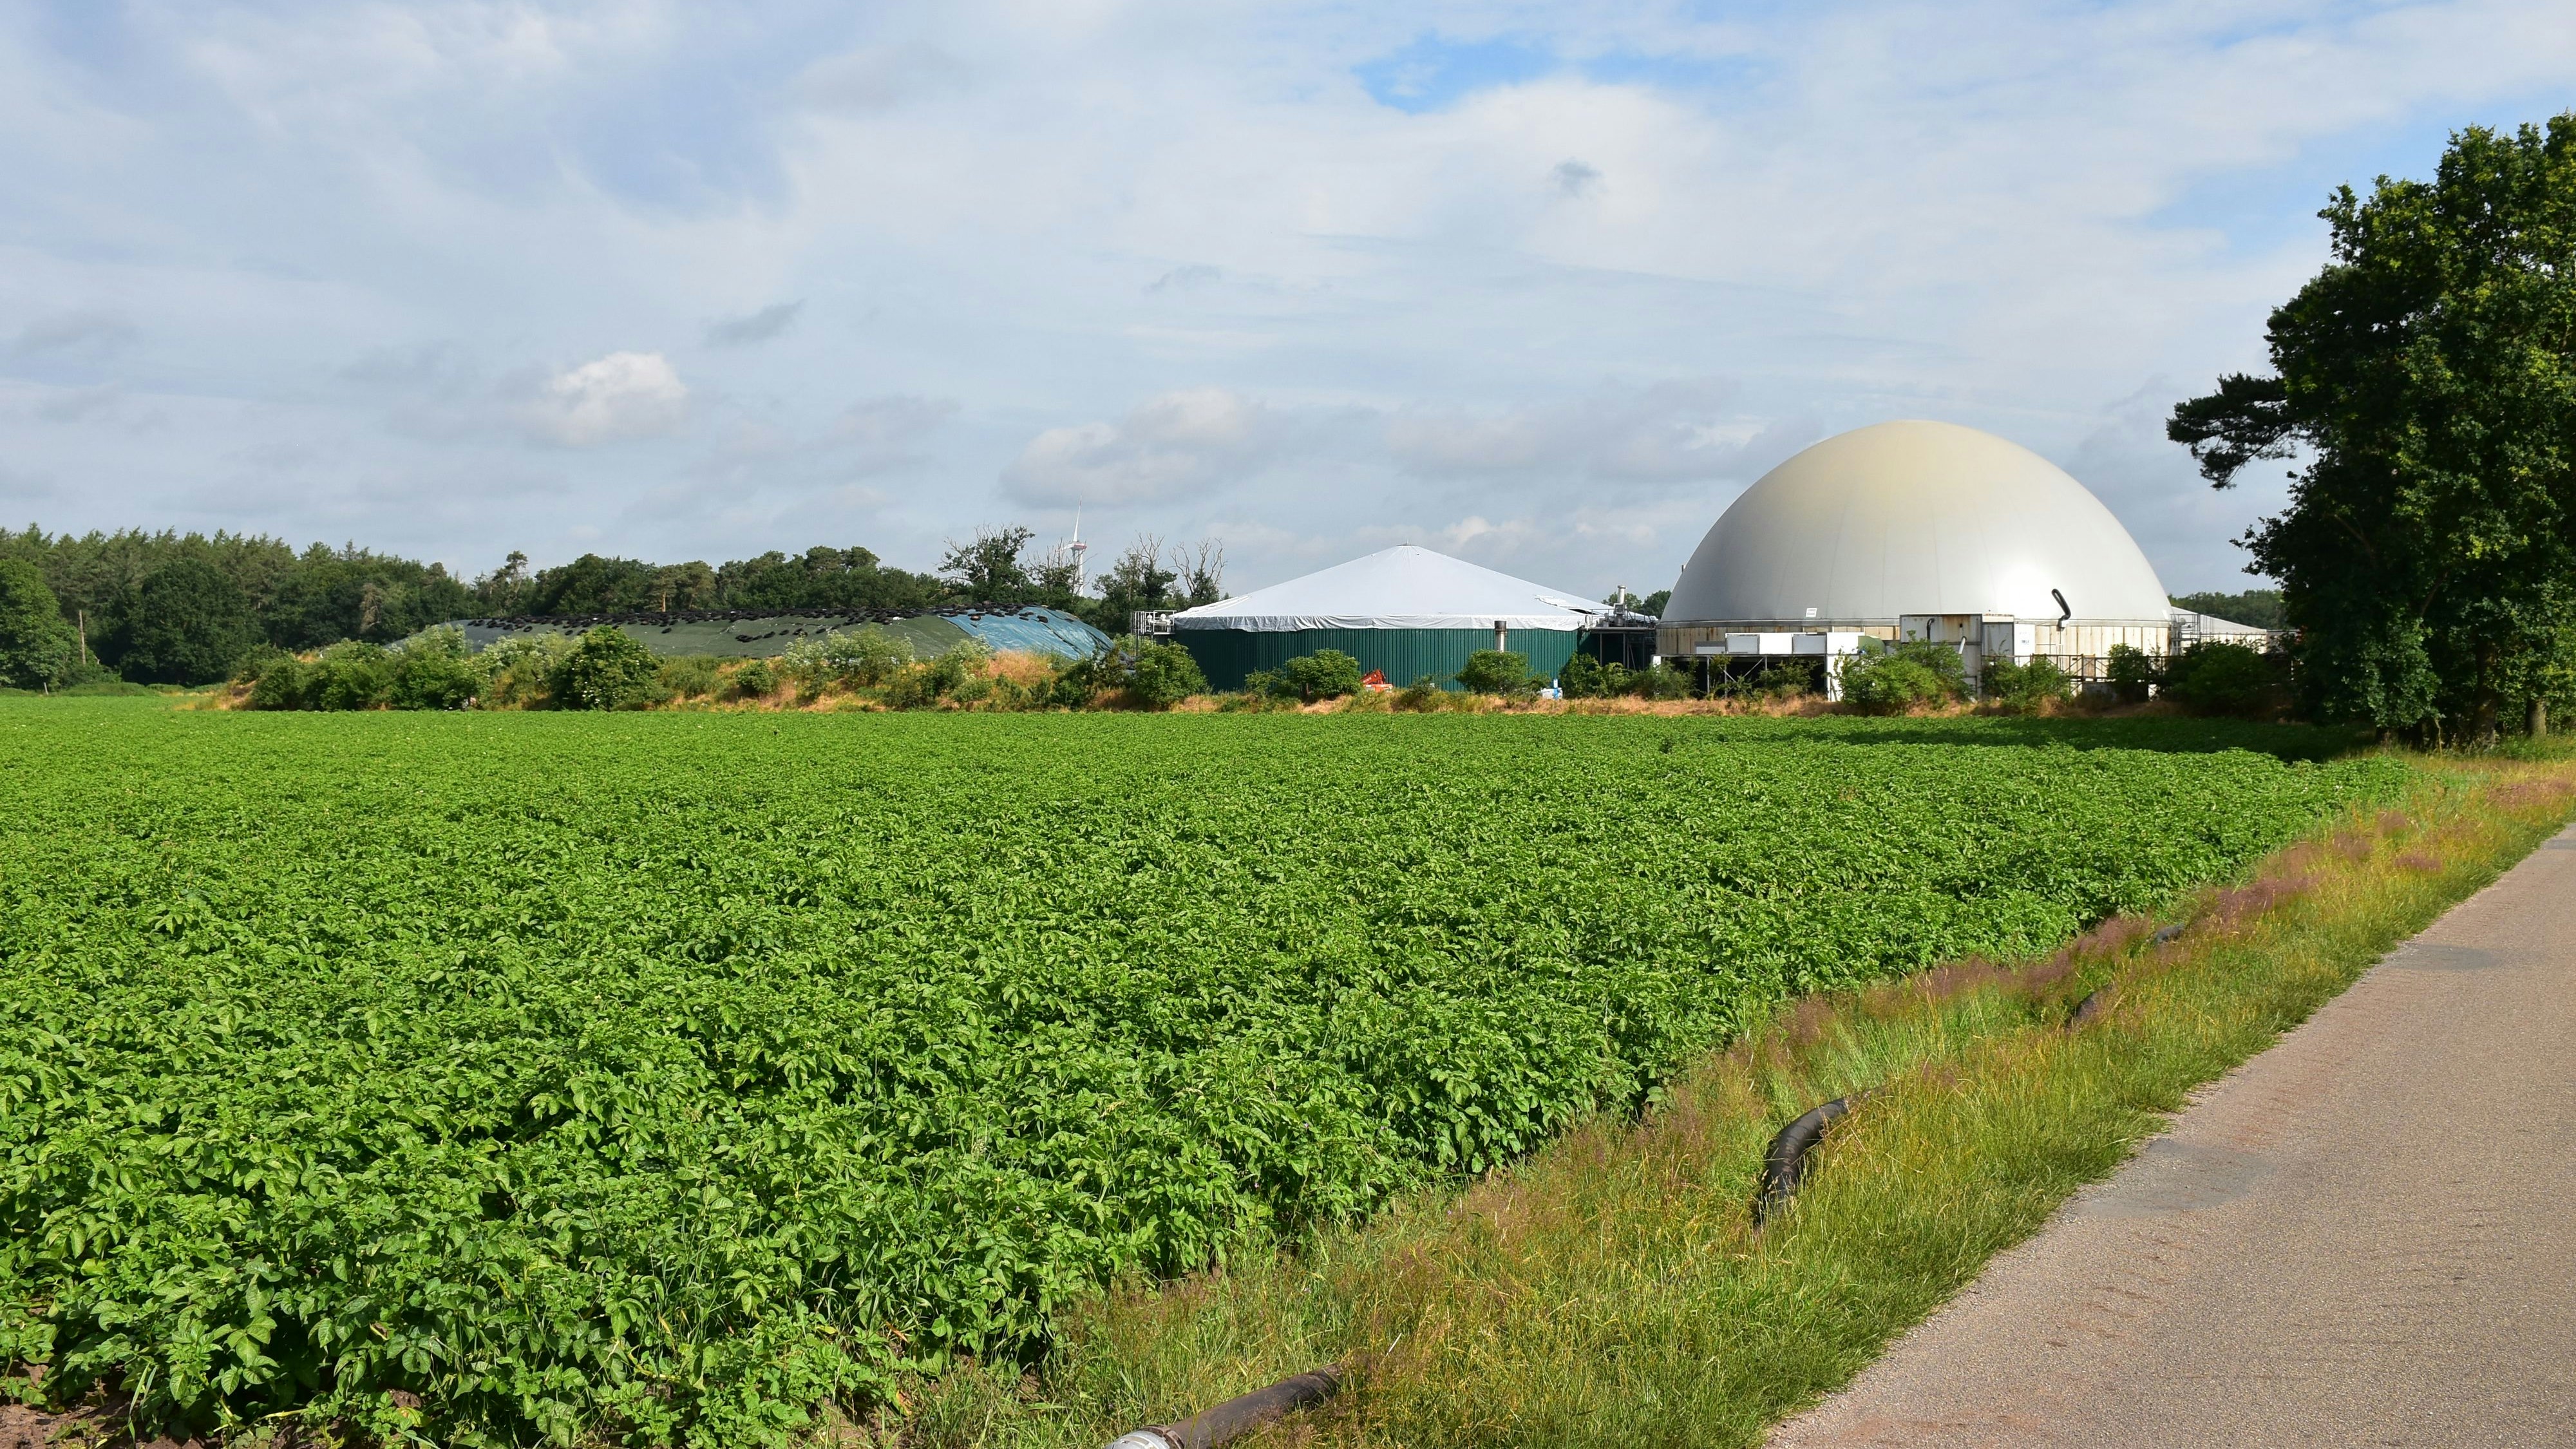 Siedeln hier bald Holdorfer Firmen an? Rund um diese Biogasanlage und die dahinter liegende Hofstelle Brüning könnte ein Gewerbegebiet entstehen. Foto: Böckmann